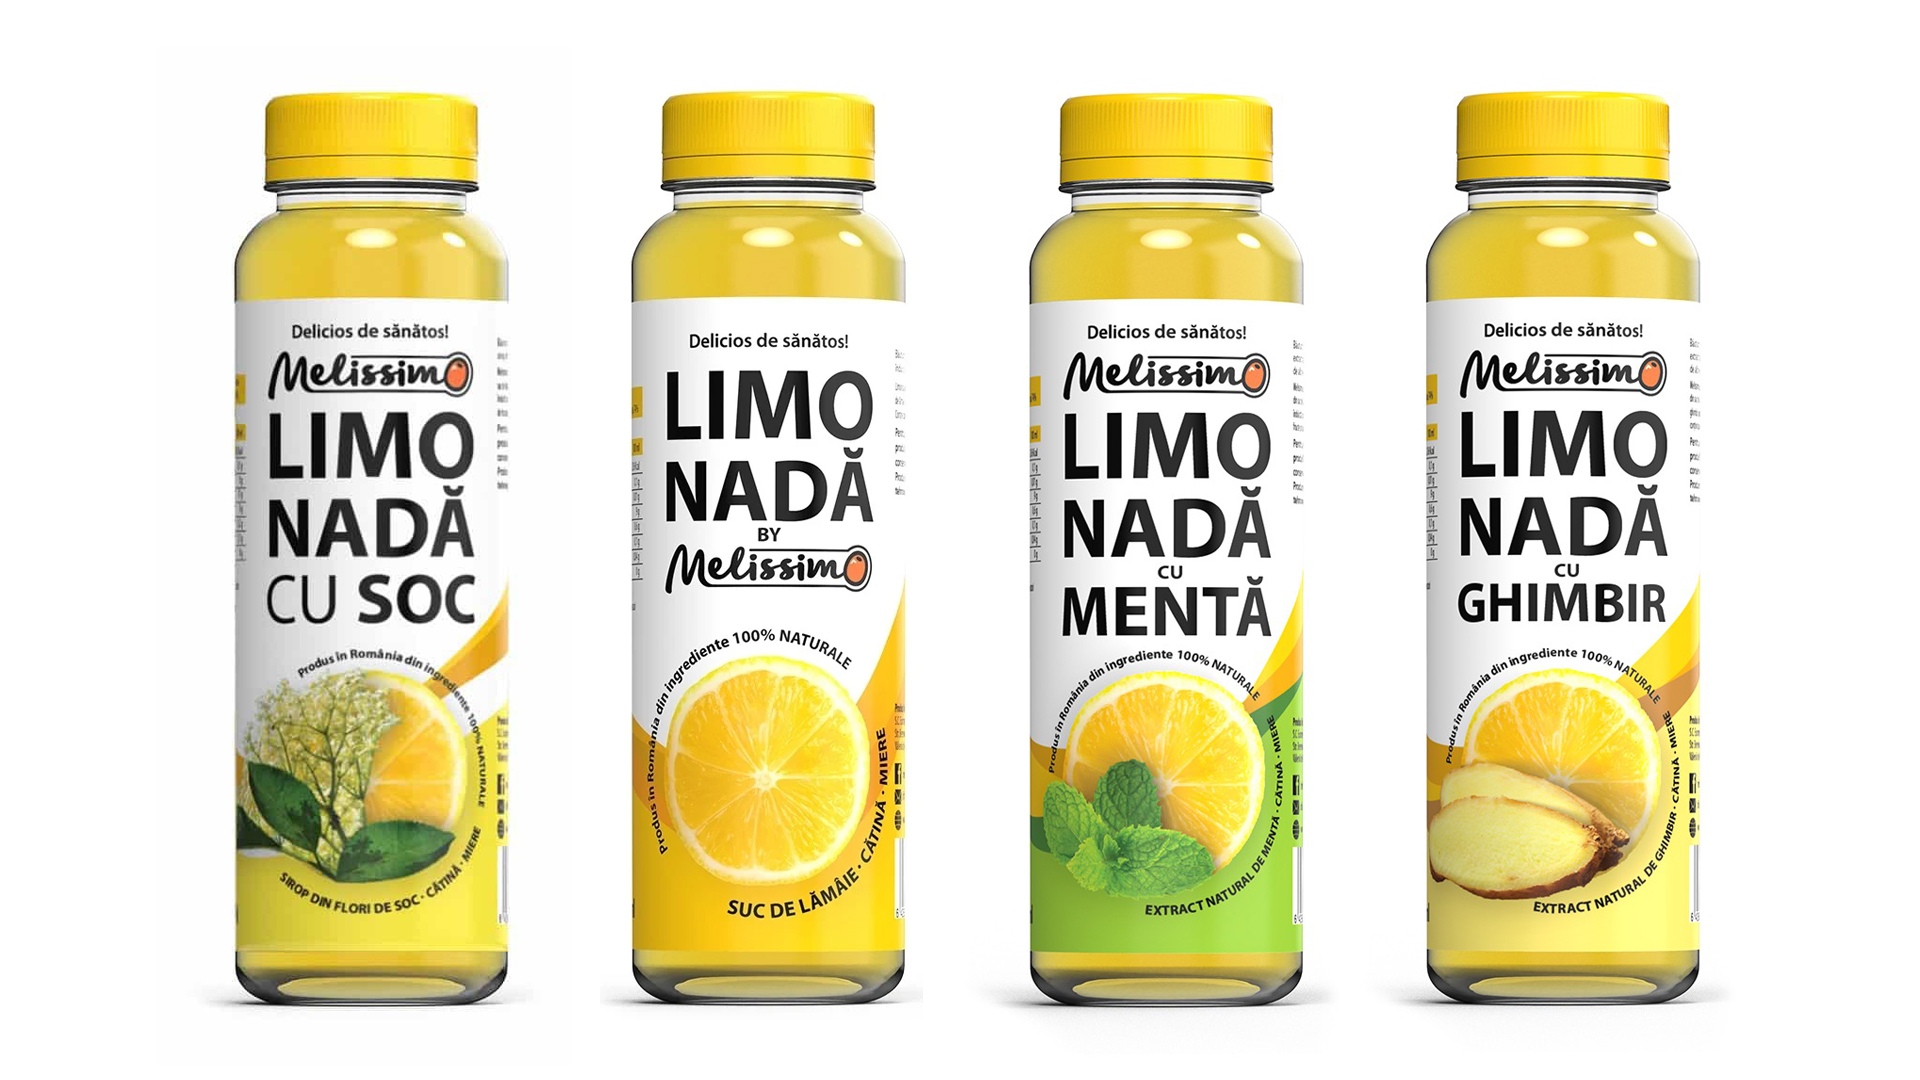 design de ambalaj limonada melissimo